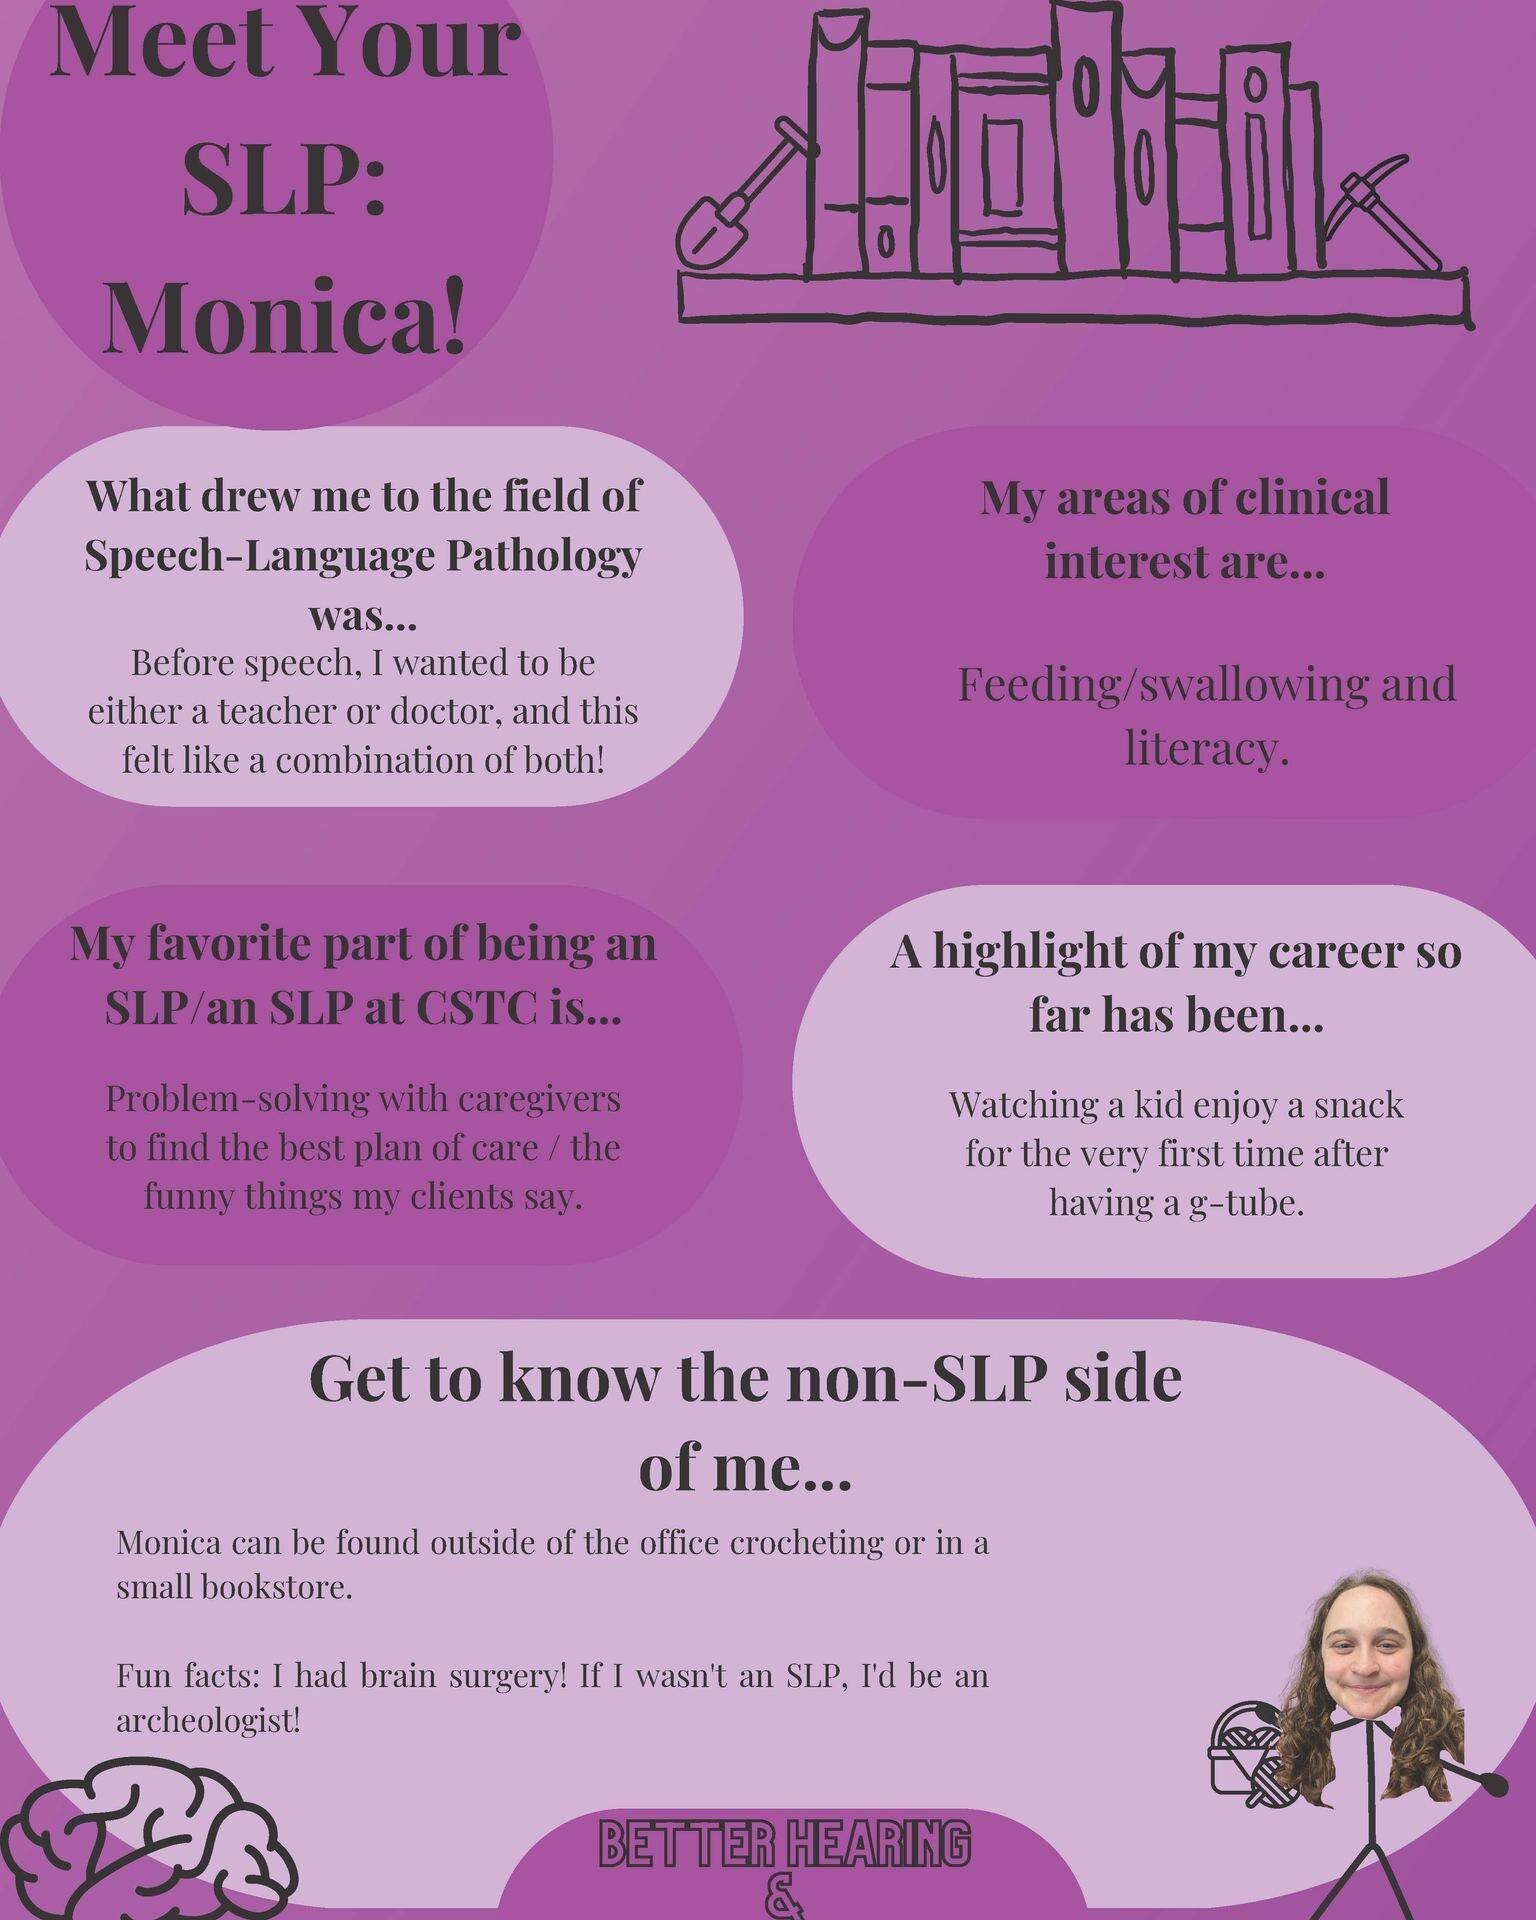 Meet SLP Monica!  May is Better Hearing &amp; Speech Month!